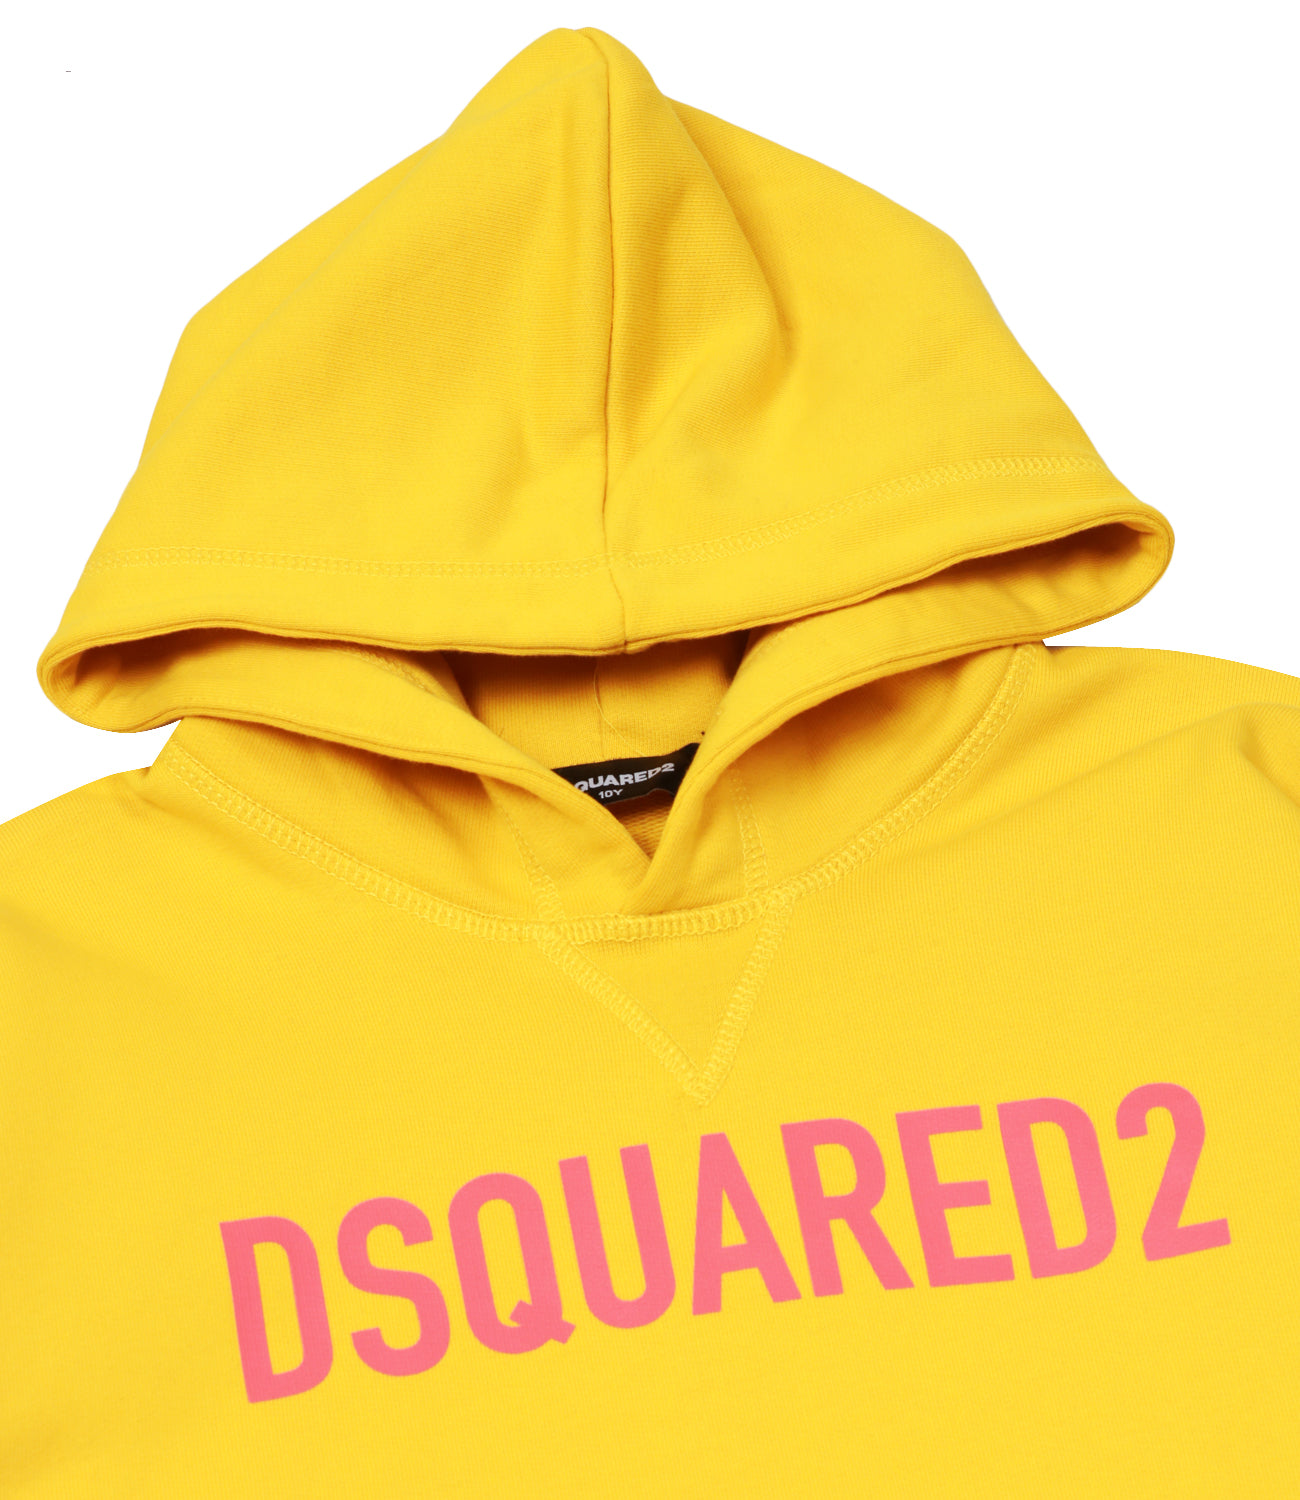 Dsquared2 Kids | Yellow Sweatshirt